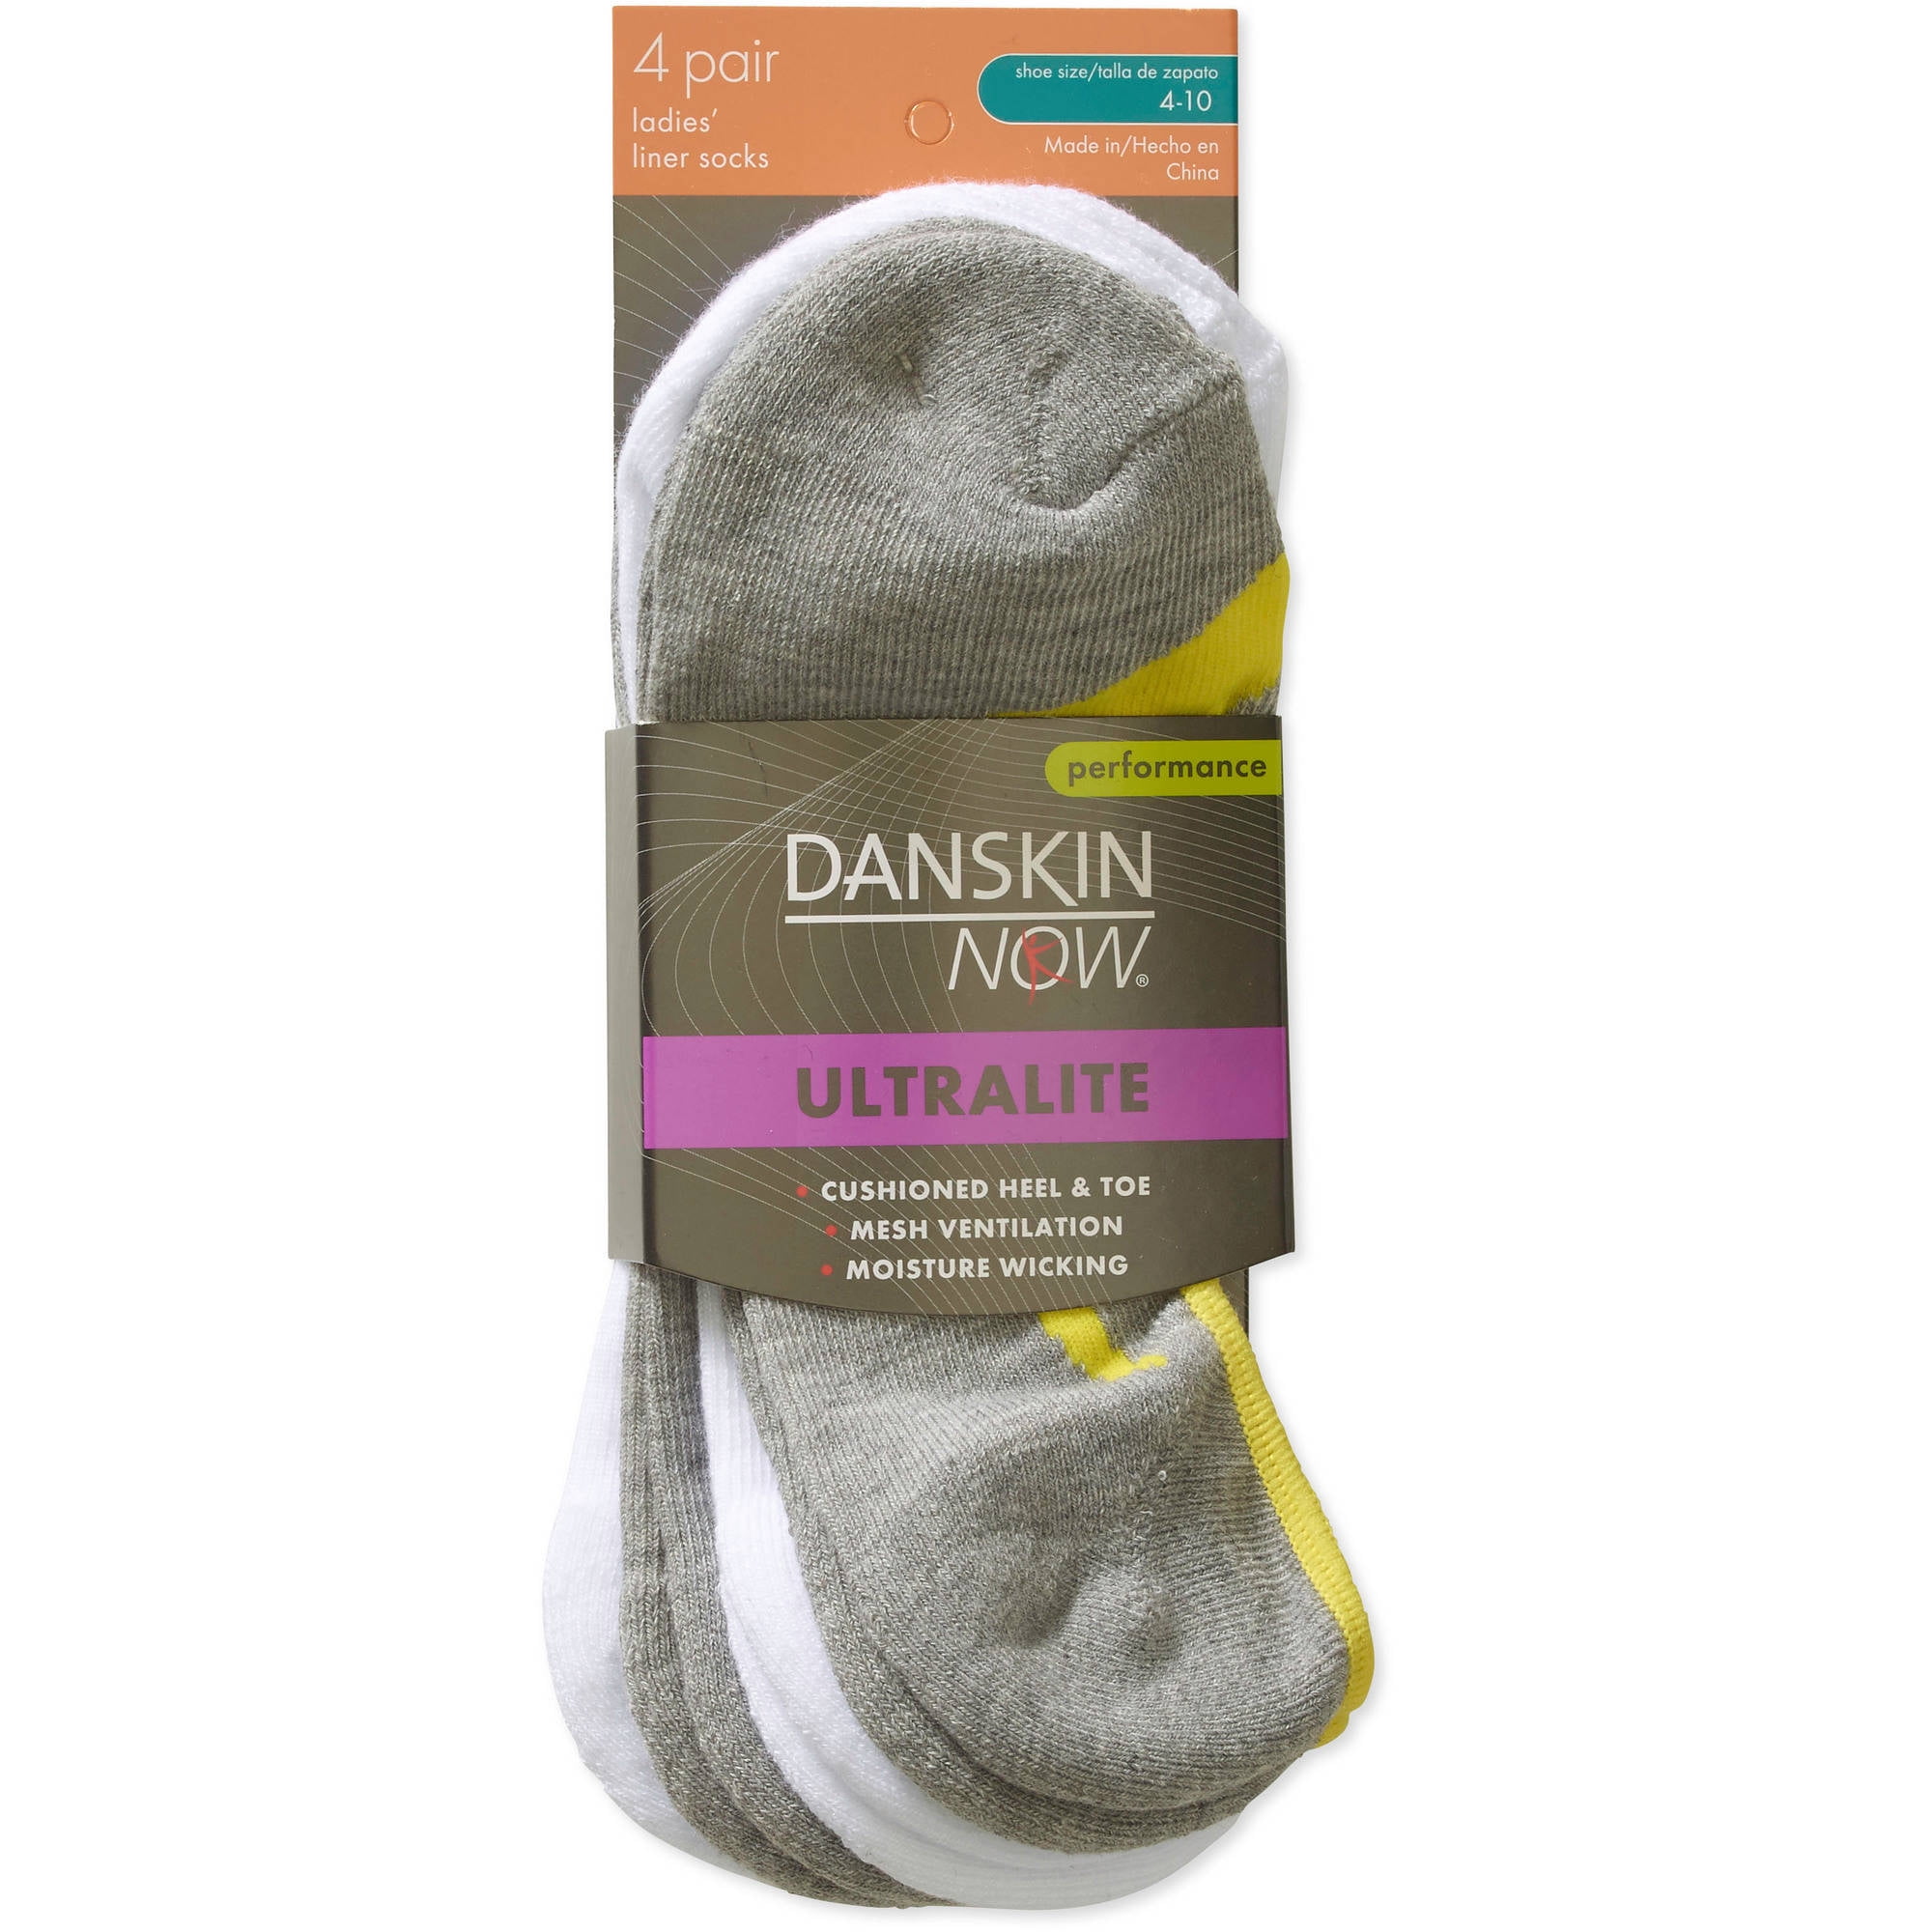 Danskin Now Women's 4 Pair Performance Ultralite Liner Socks Size 4-10 NEW 